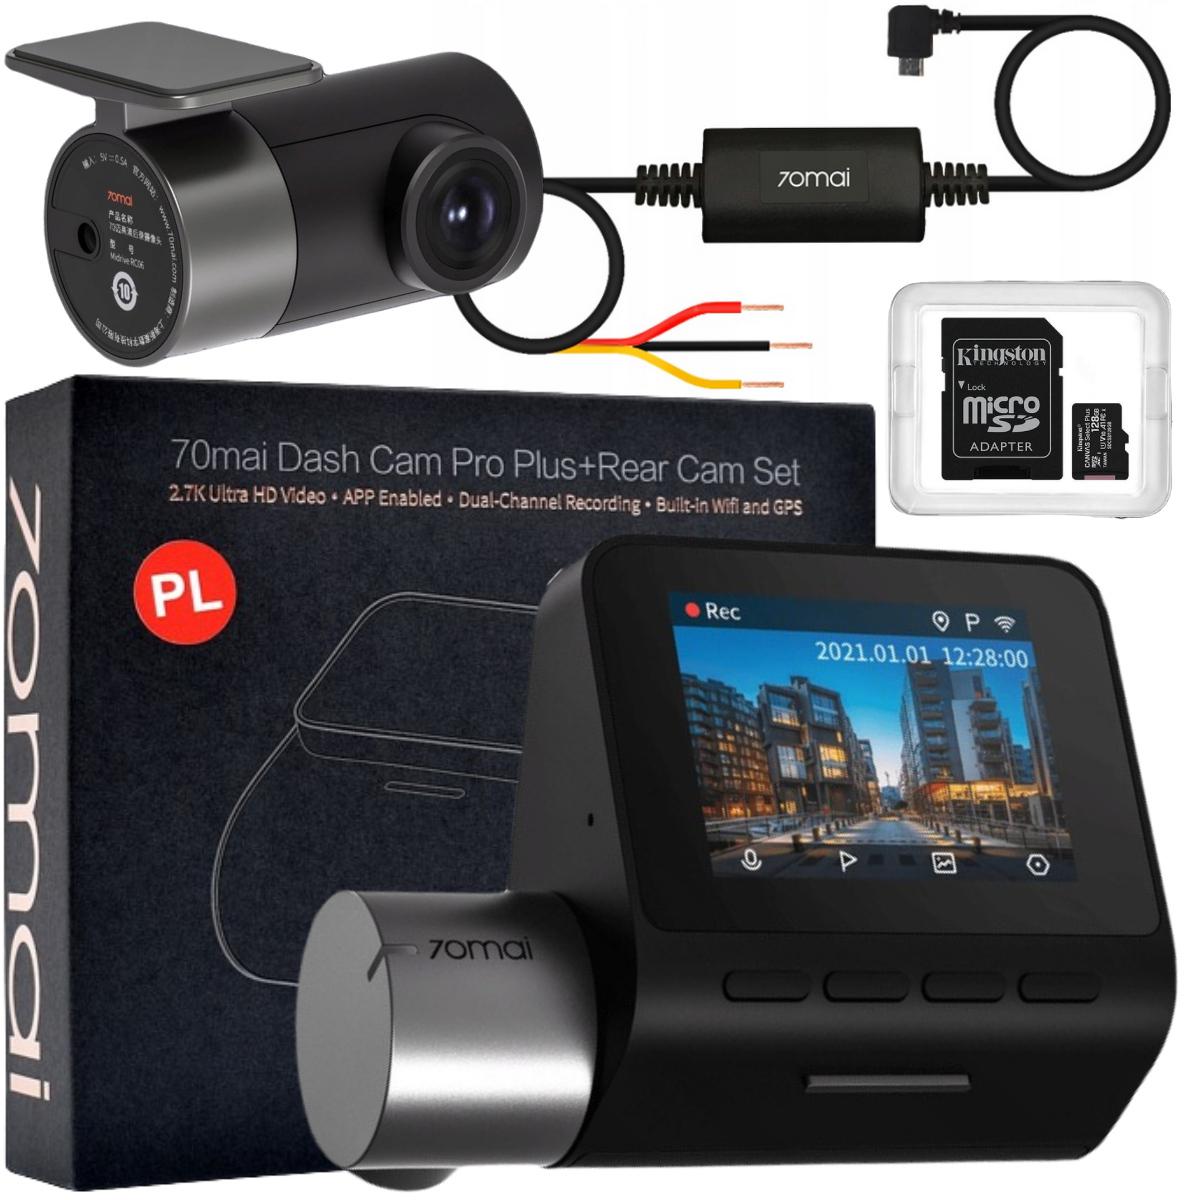 Zestaw wideorejestrator 70mai A500s Dash Cam Pro Plus + RC6 + karta pamięci Kingston 128GB + zasilanie trybu parkingowego kamer Hardware Kit - najważniejsze cechy: